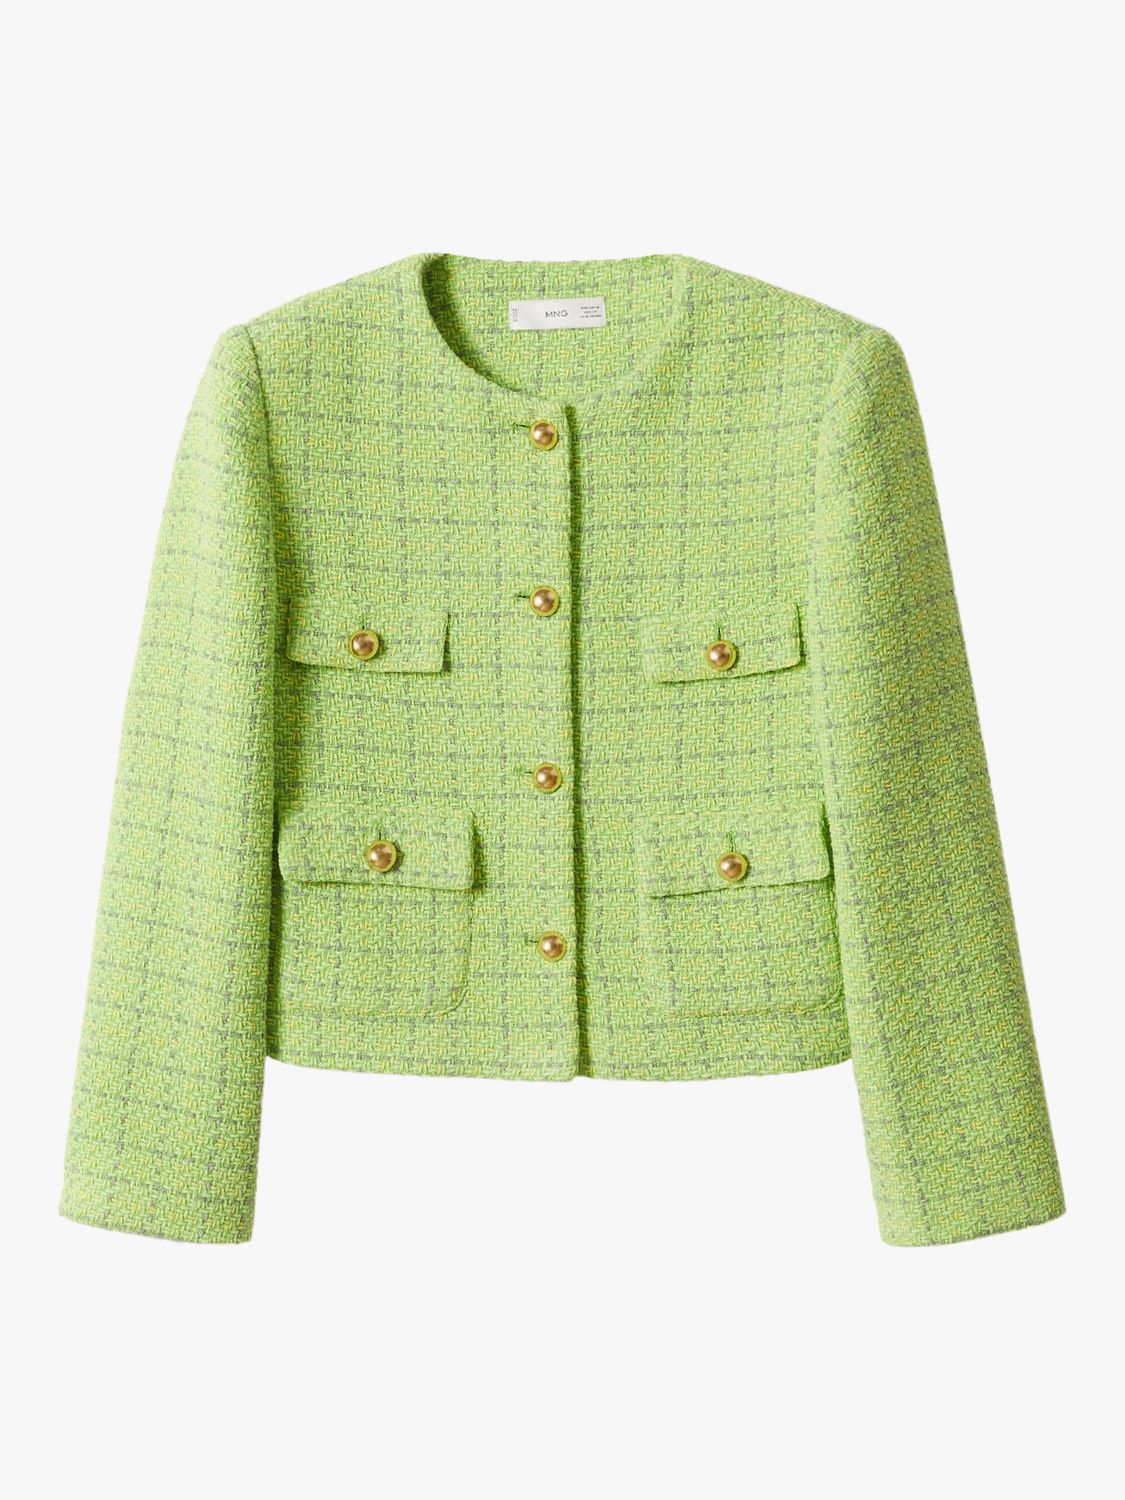 Mango Wintour Tweed Jacket, Green at John Lewis & Partners